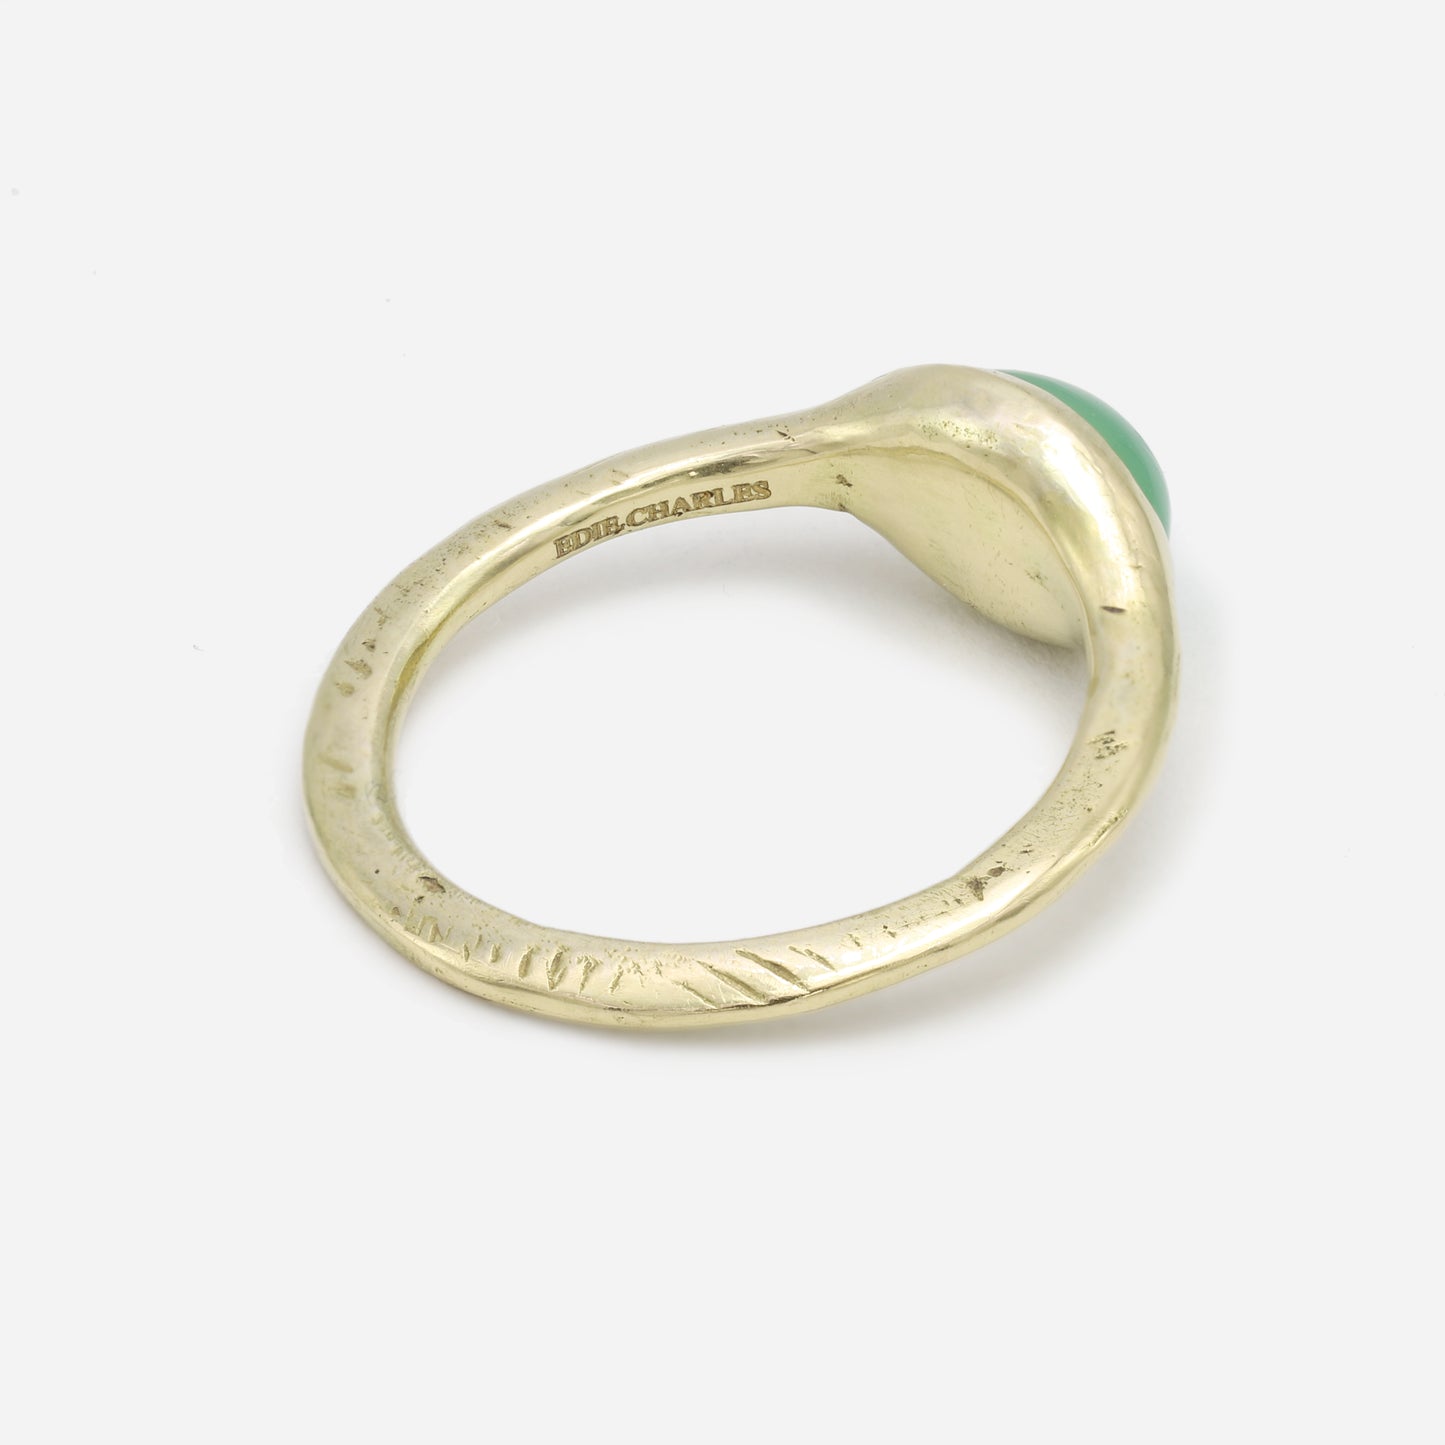 Aurora Pantheon Ring